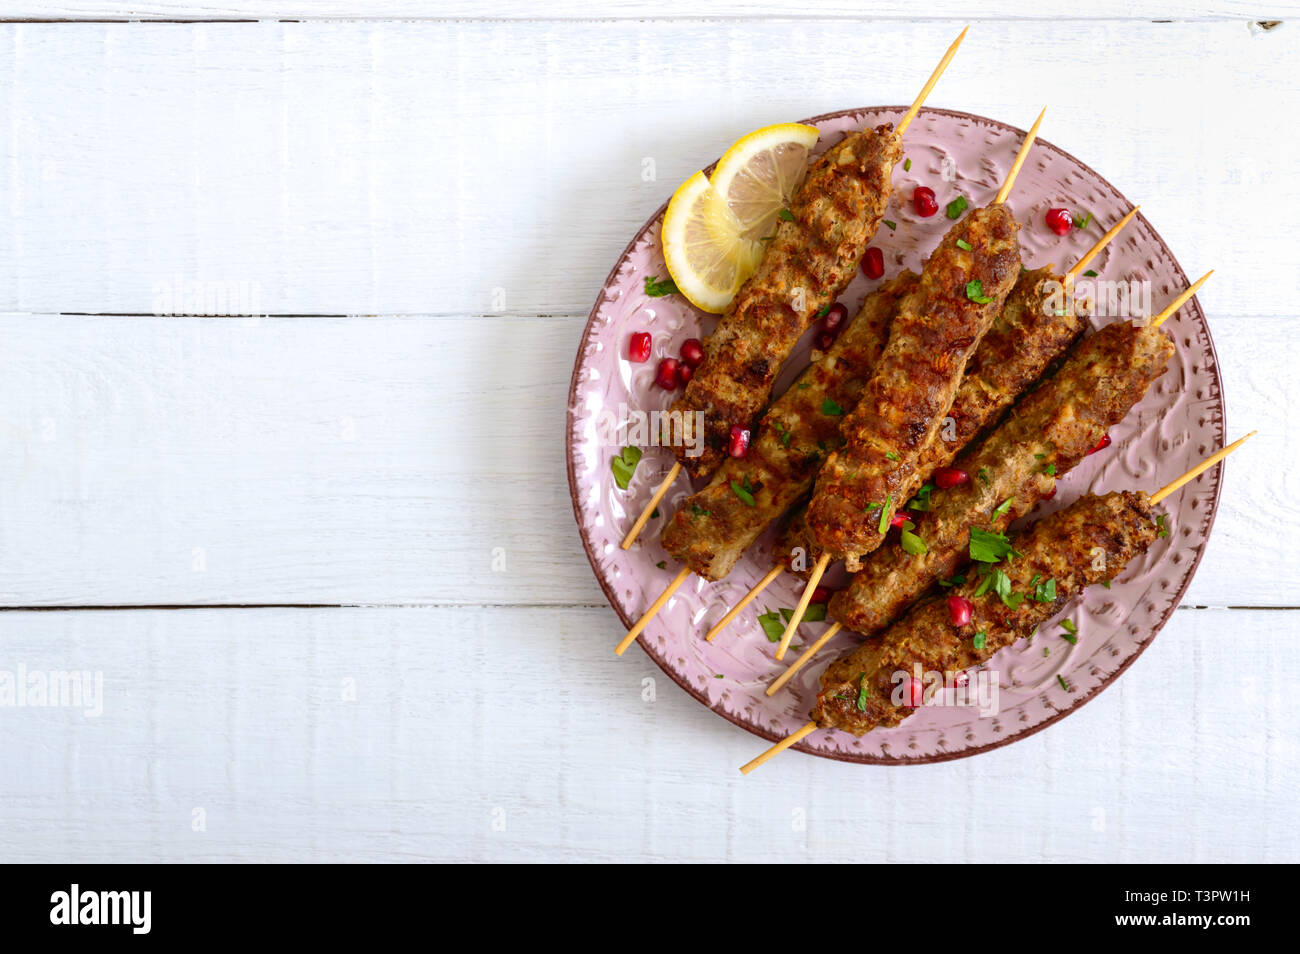 Lecker lula Kebab auf der Platte auf einem weißen Holztisch. Gehacktes Fleisch auf Holzspieße, gegrillt. Östliche Küche. Ansicht von oben, flach. Stockfoto